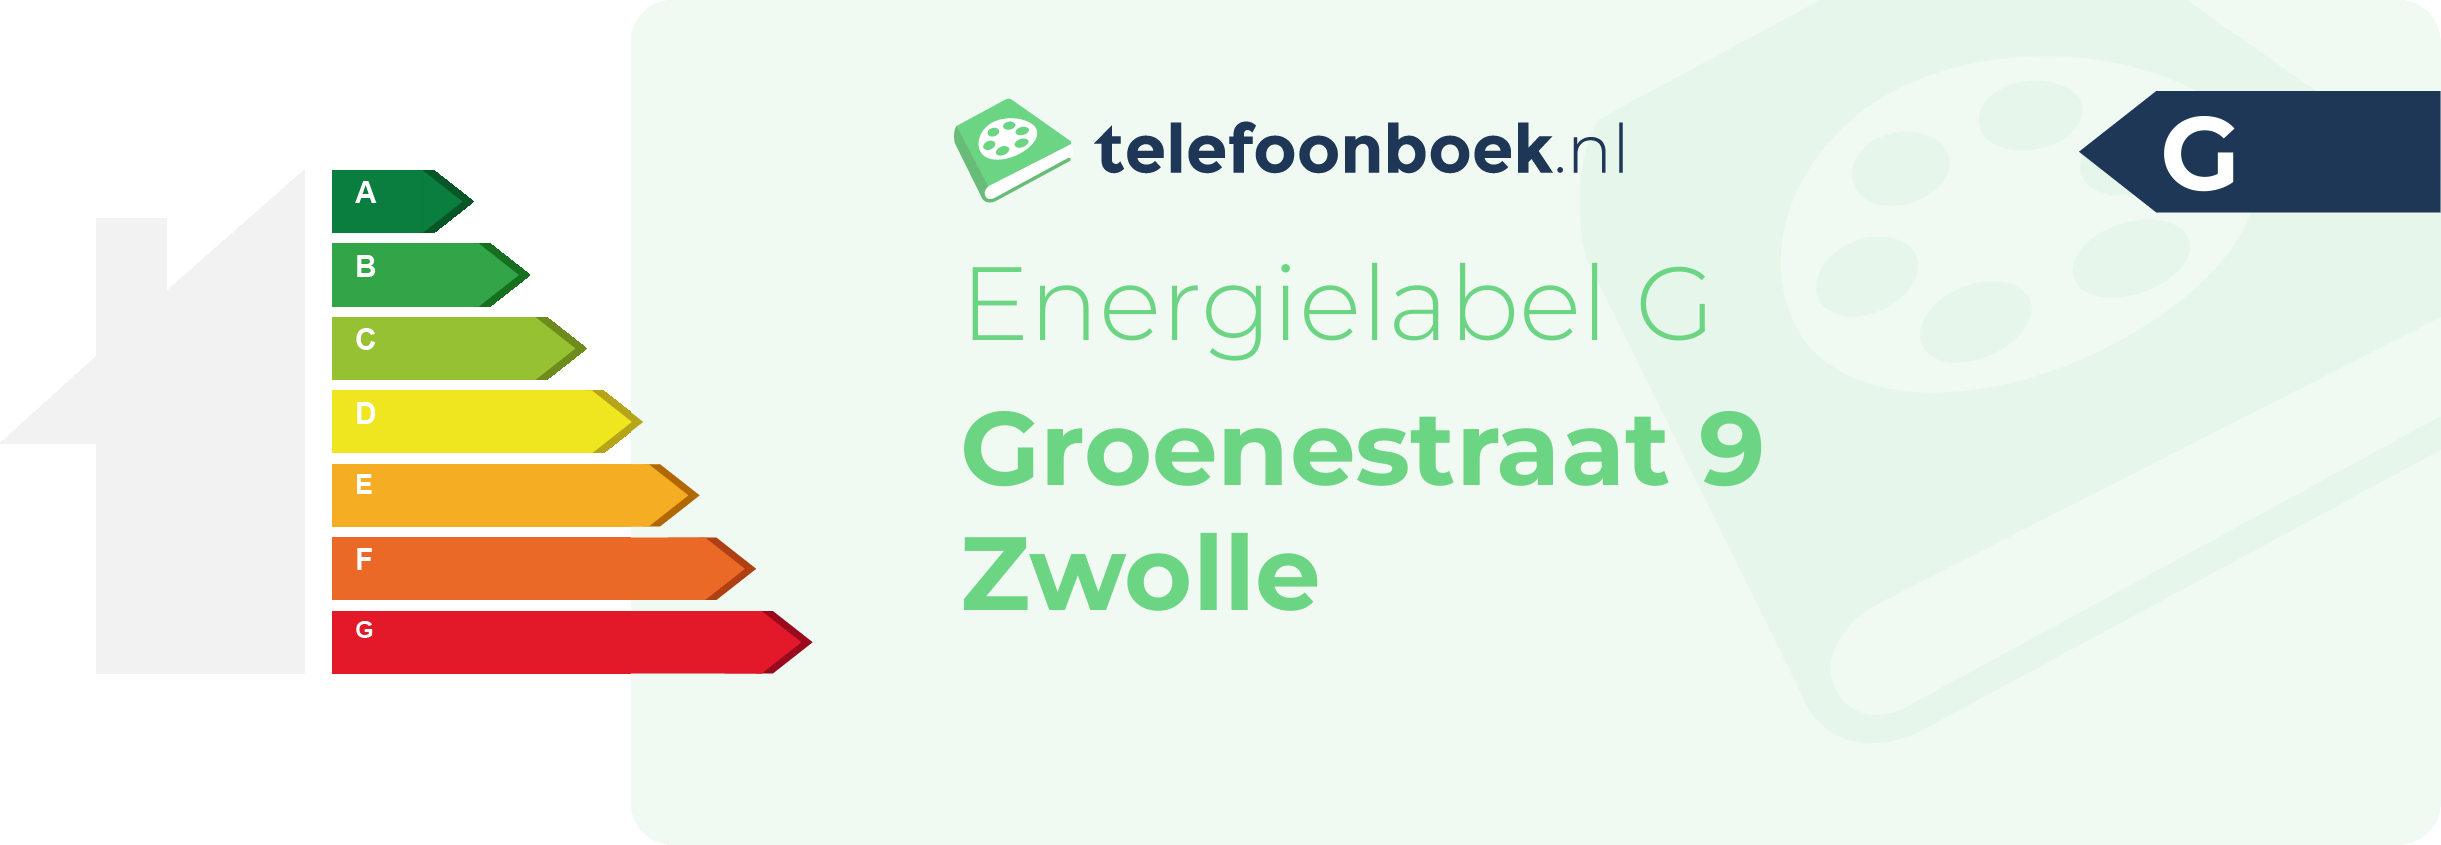 Energielabel Groenestraat 9 Zwolle